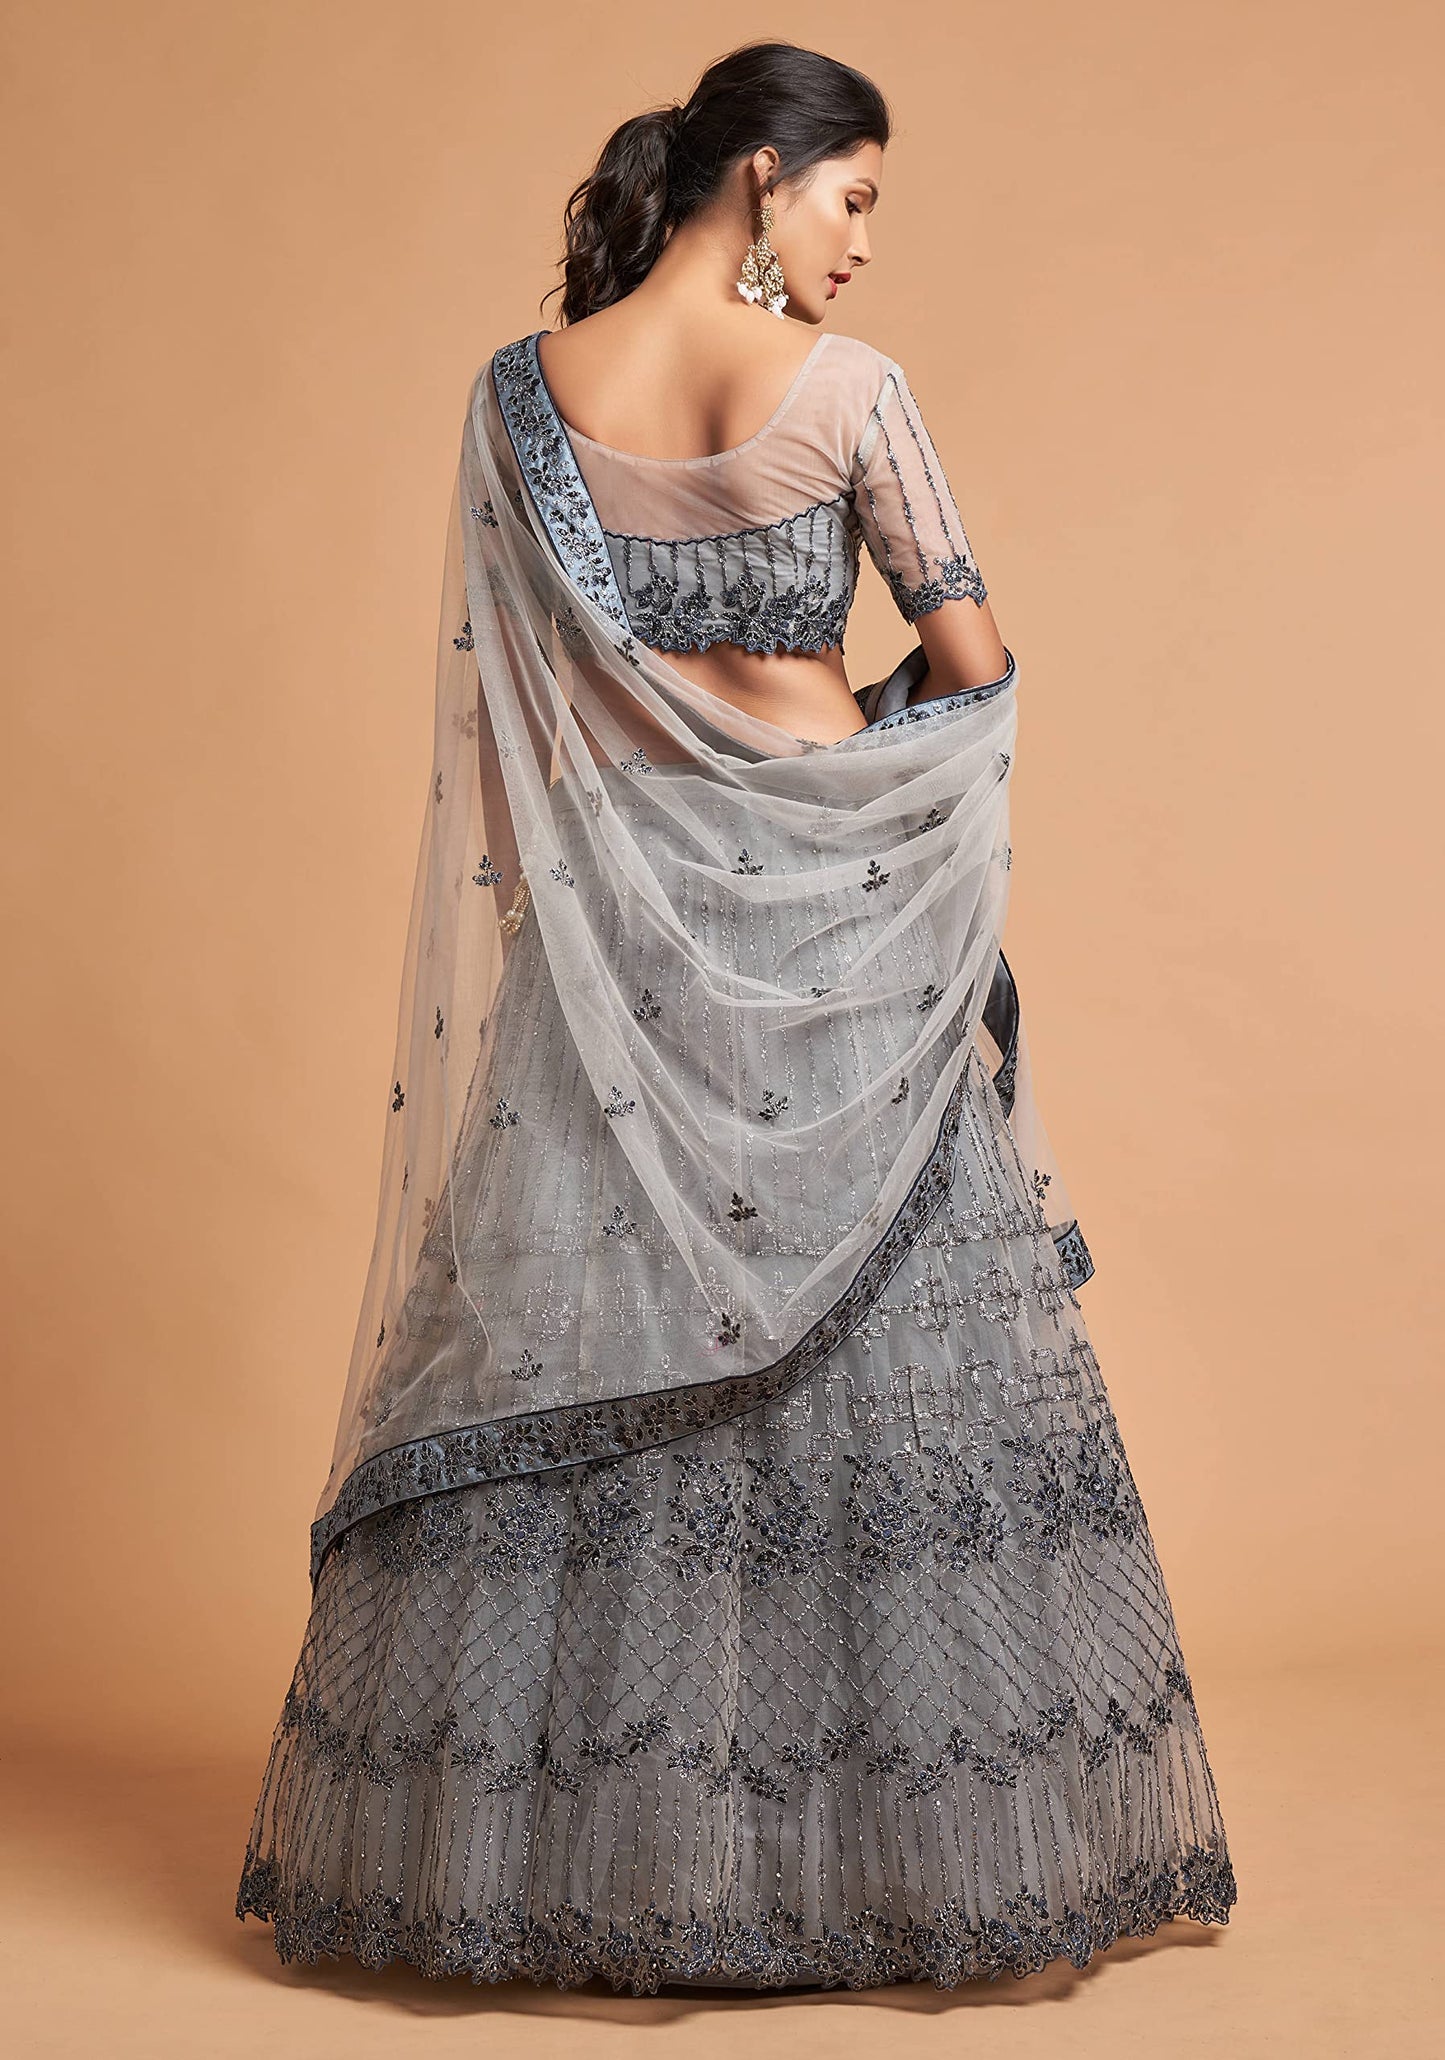 Zeel Clothing Women's Net Embroidered Semi-Stitched Bridal New Lehenga Choli with Dupatta (7312-Grey-Wedding-Girlish-Latest-Lehenga; Free Size)